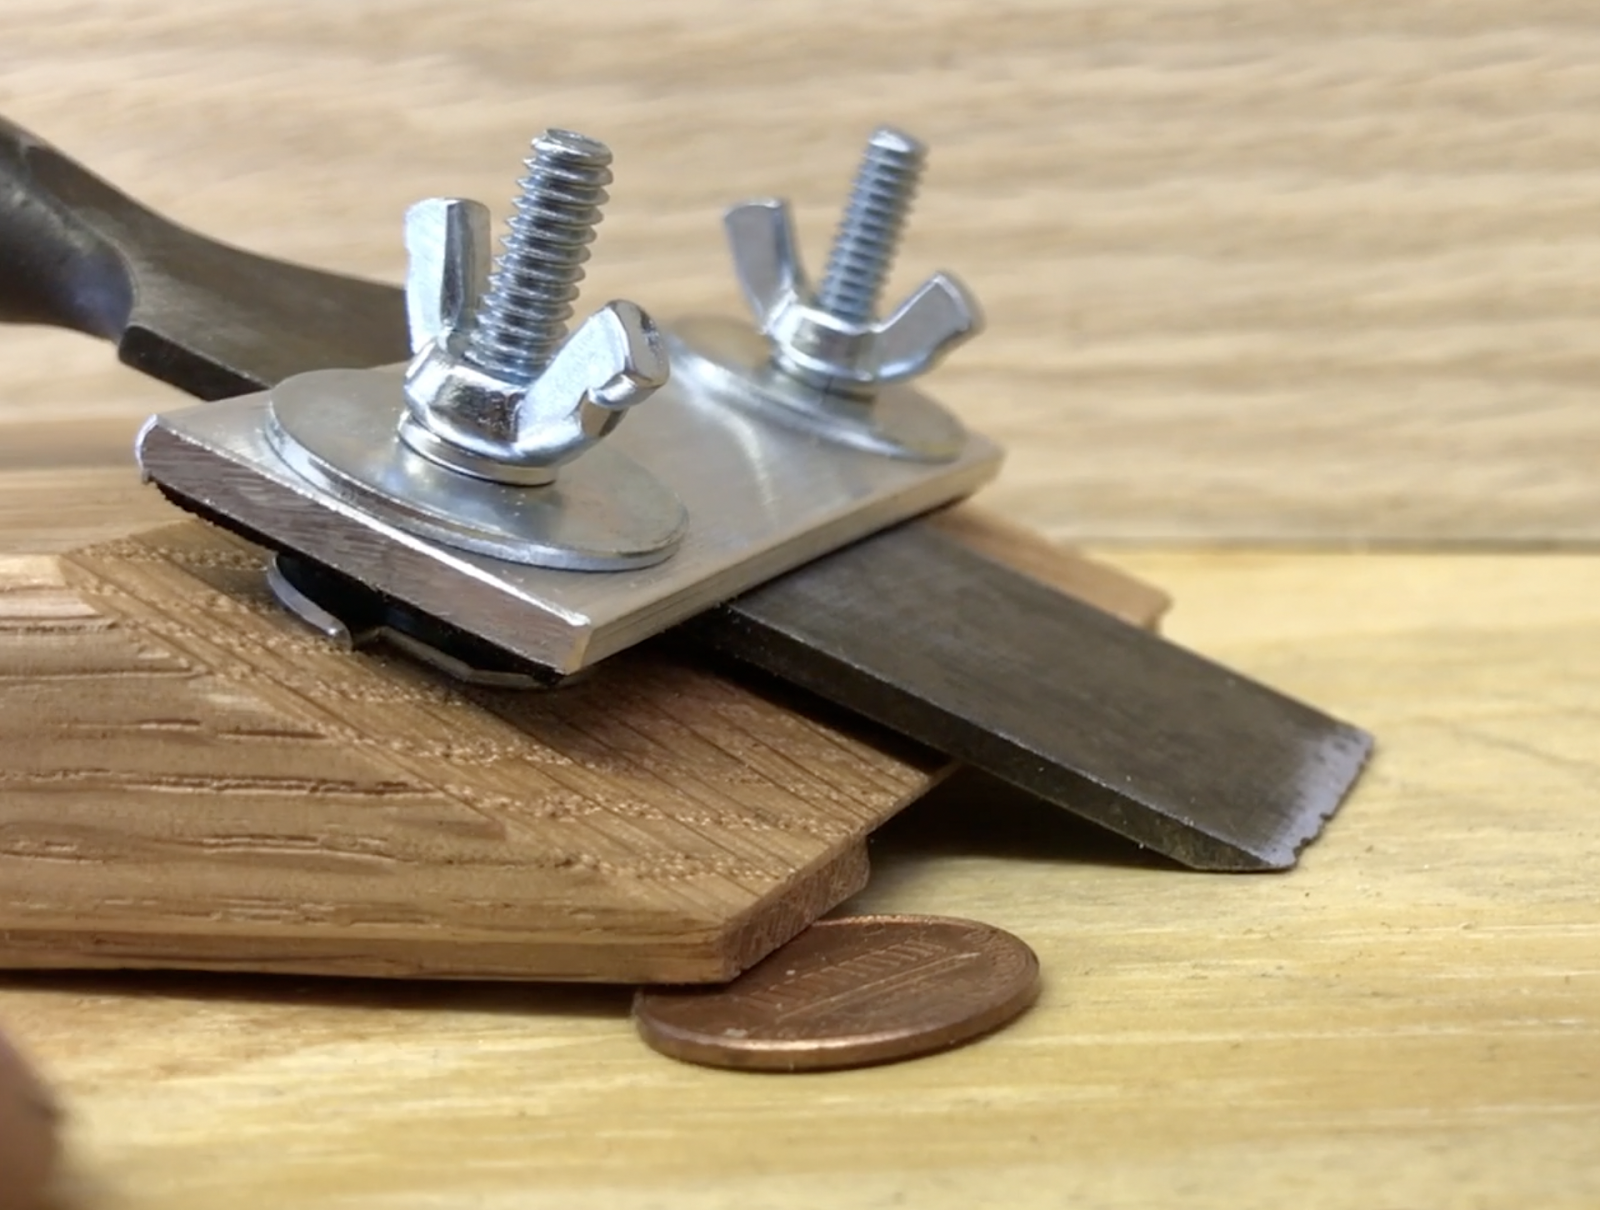 Приспособление для состаривания древесины. Стамесочный рубанок veritas. Edge Sanding Jig 3d Print. Sharpening. Here tool